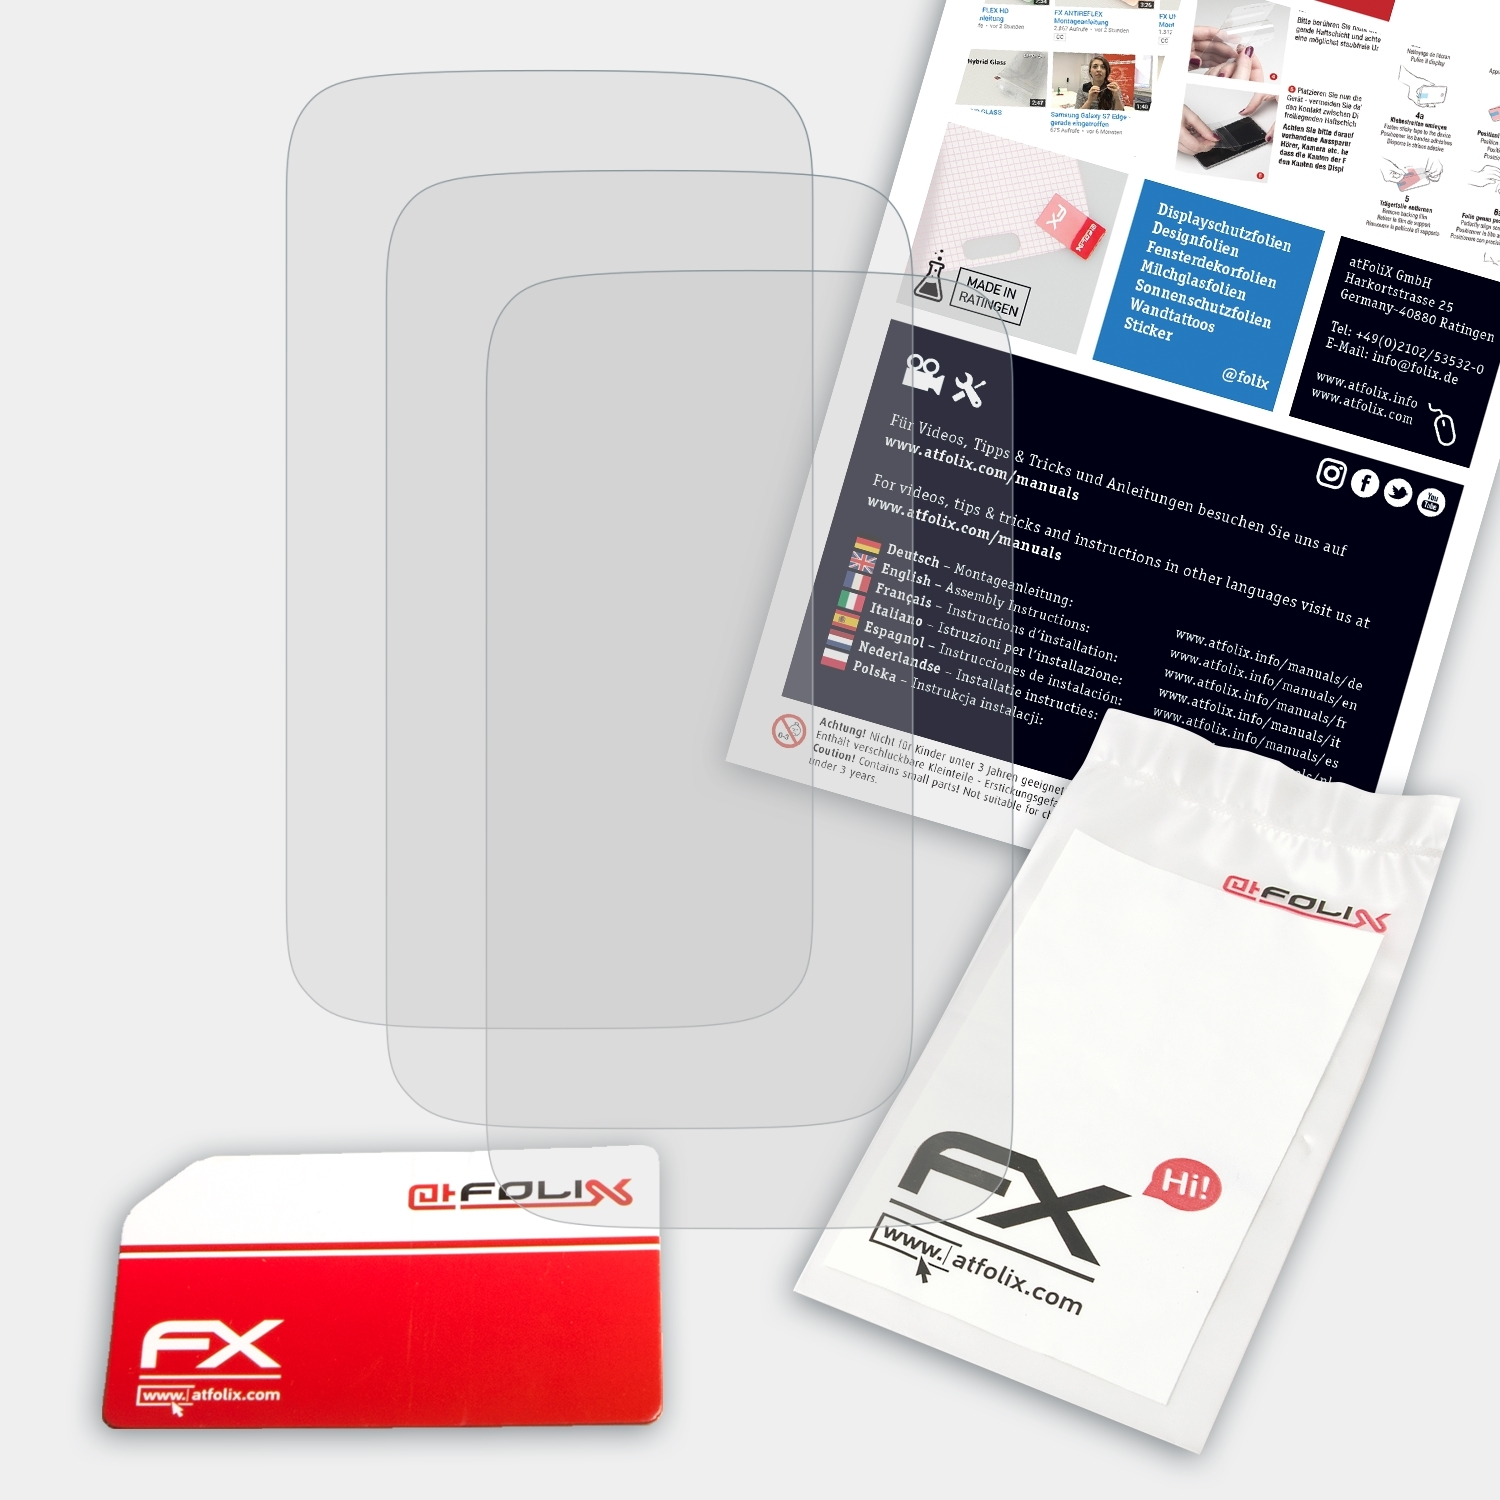 3x Displayschutz(für X) FX-Antireflex ATFOLIX HTC Desire